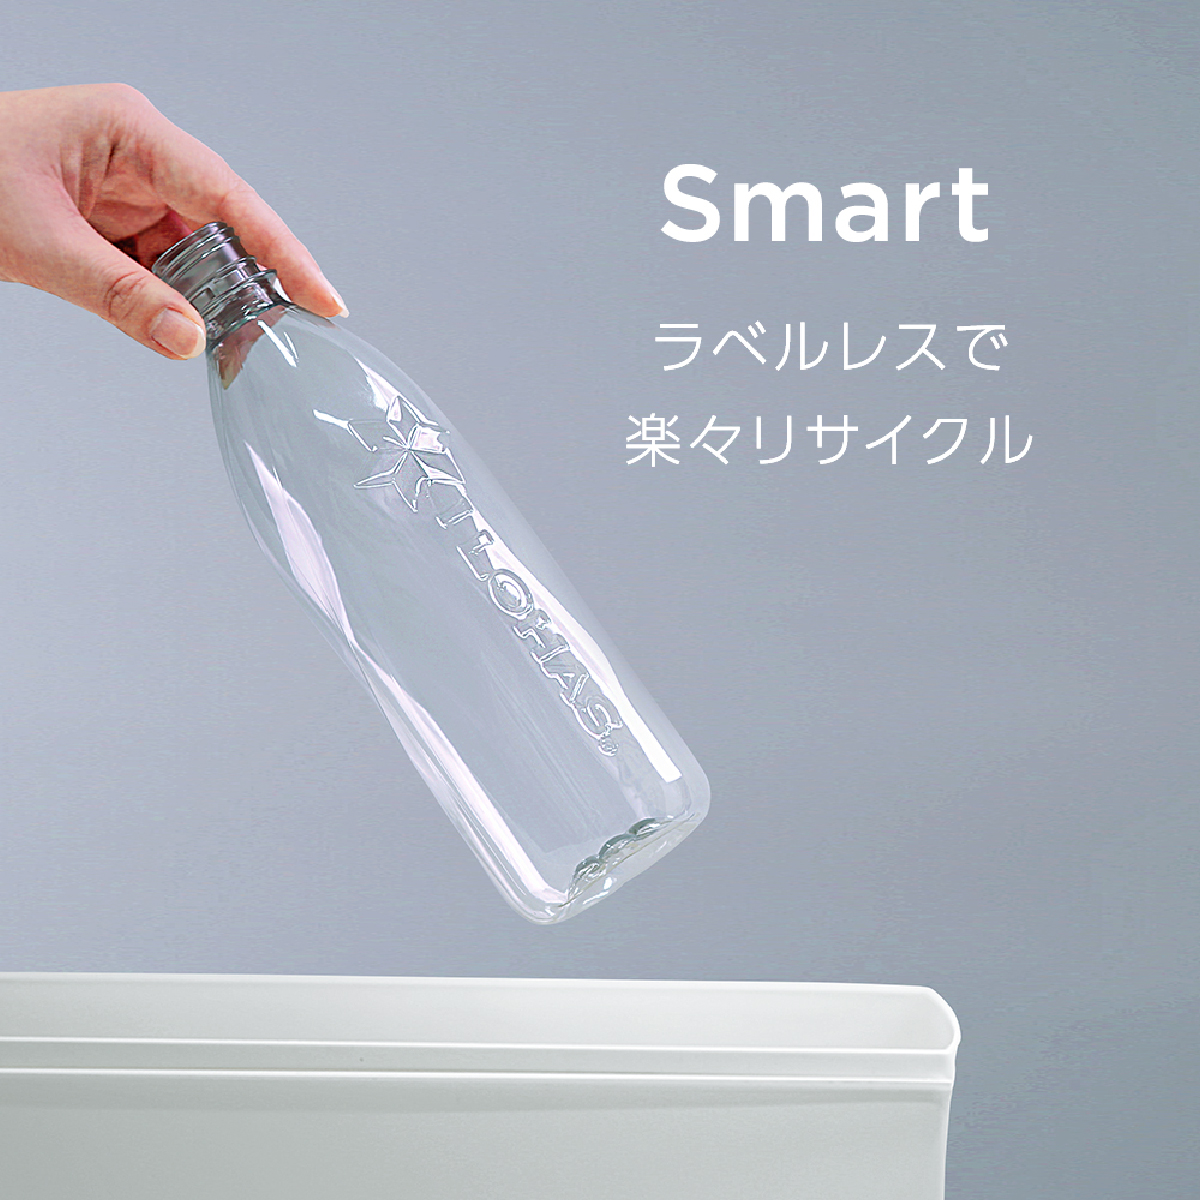 【自由テーマ】コカ・コーラ100%リサイクルPETラベルレスボトル(350ml)